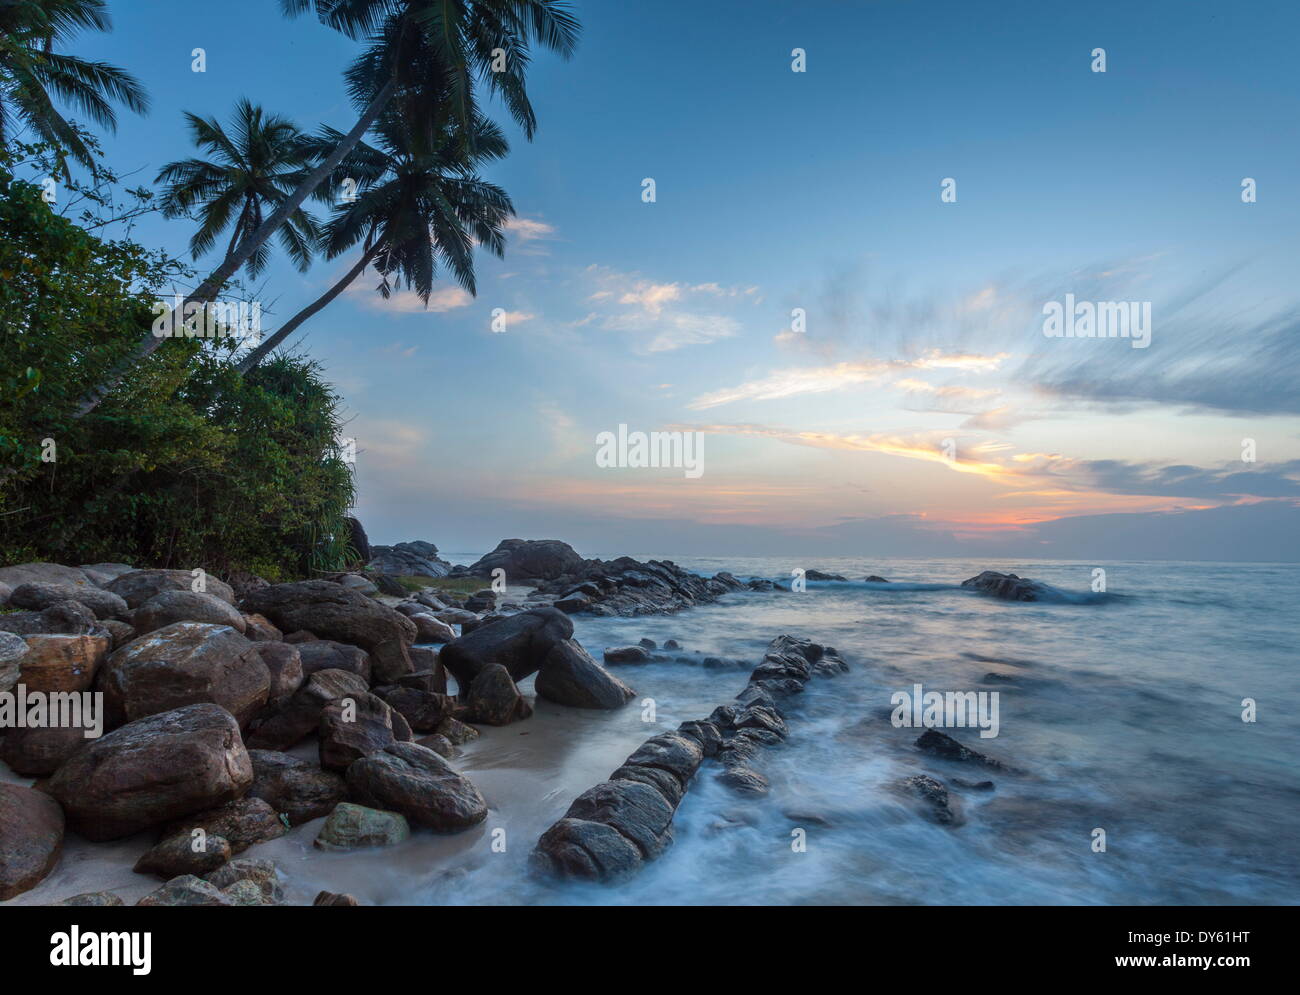 Amanecer en una apartada laguna con rocas y palmeras enmarcan la vista, Tangalle, Sri Lanka, el Océano Índico, Asia Foto de stock